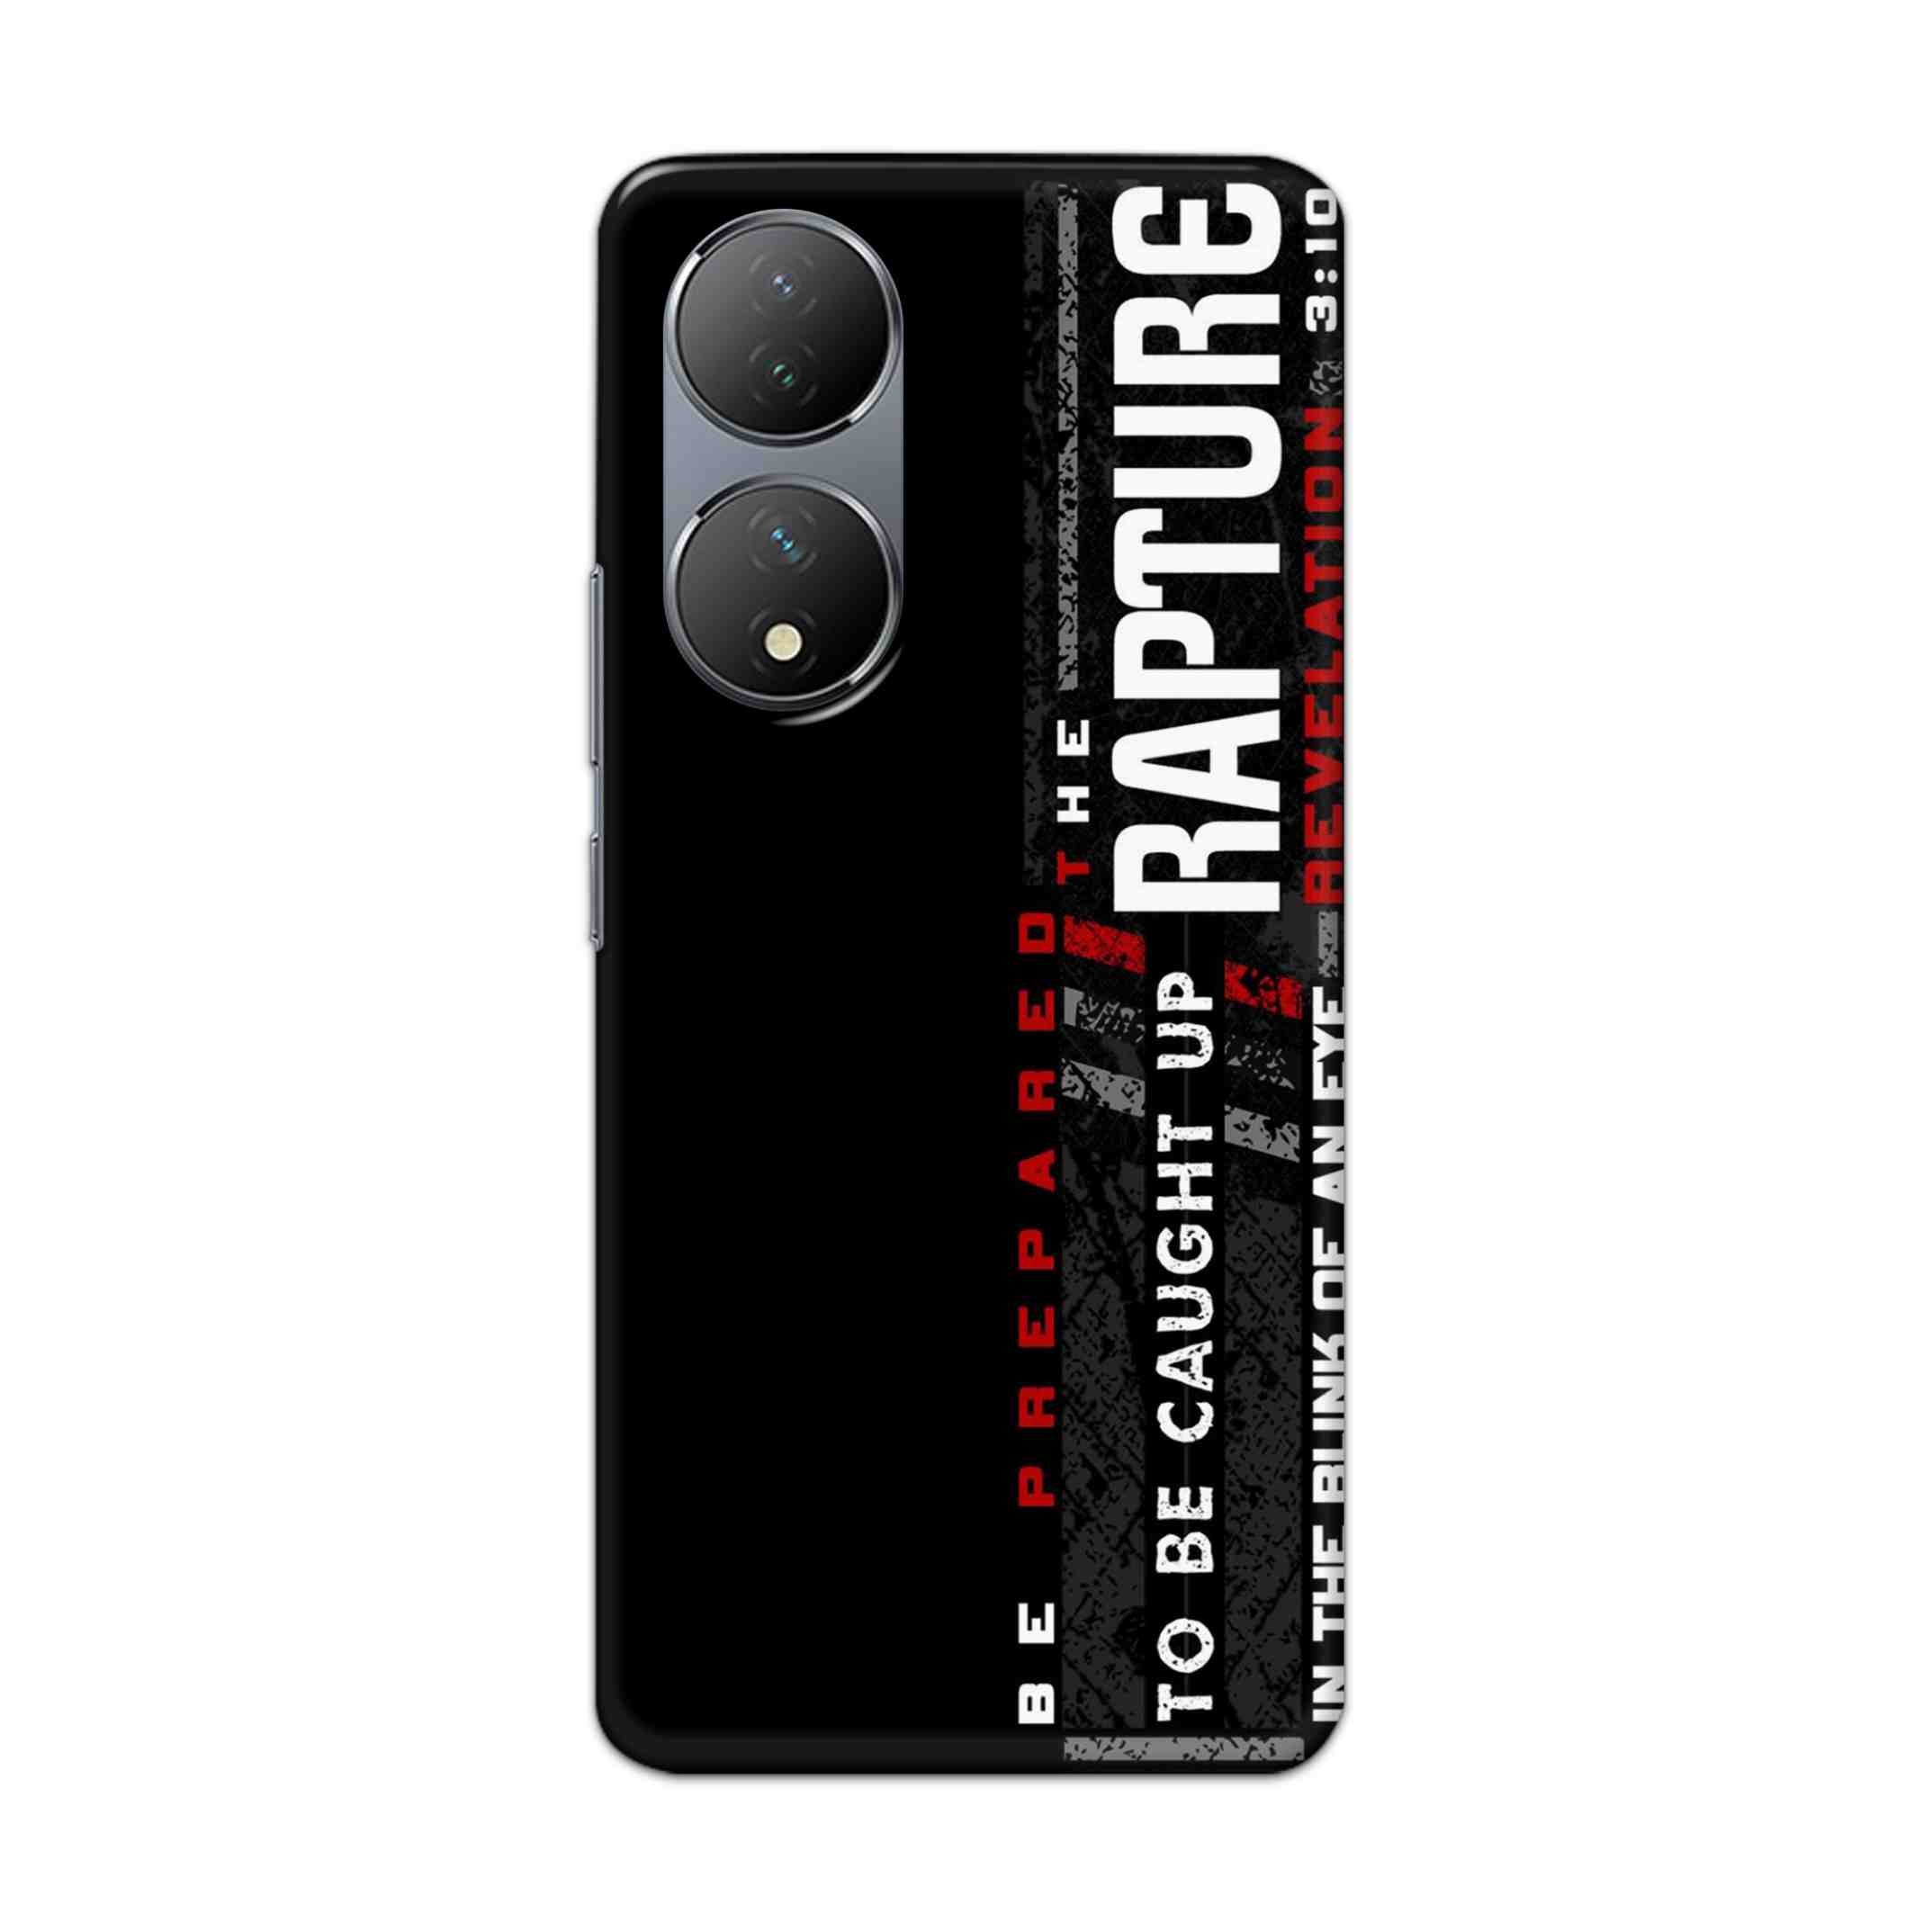 Buy Rapture Hard Back Mobile Phone Case Cover For Vivo Y100 Online